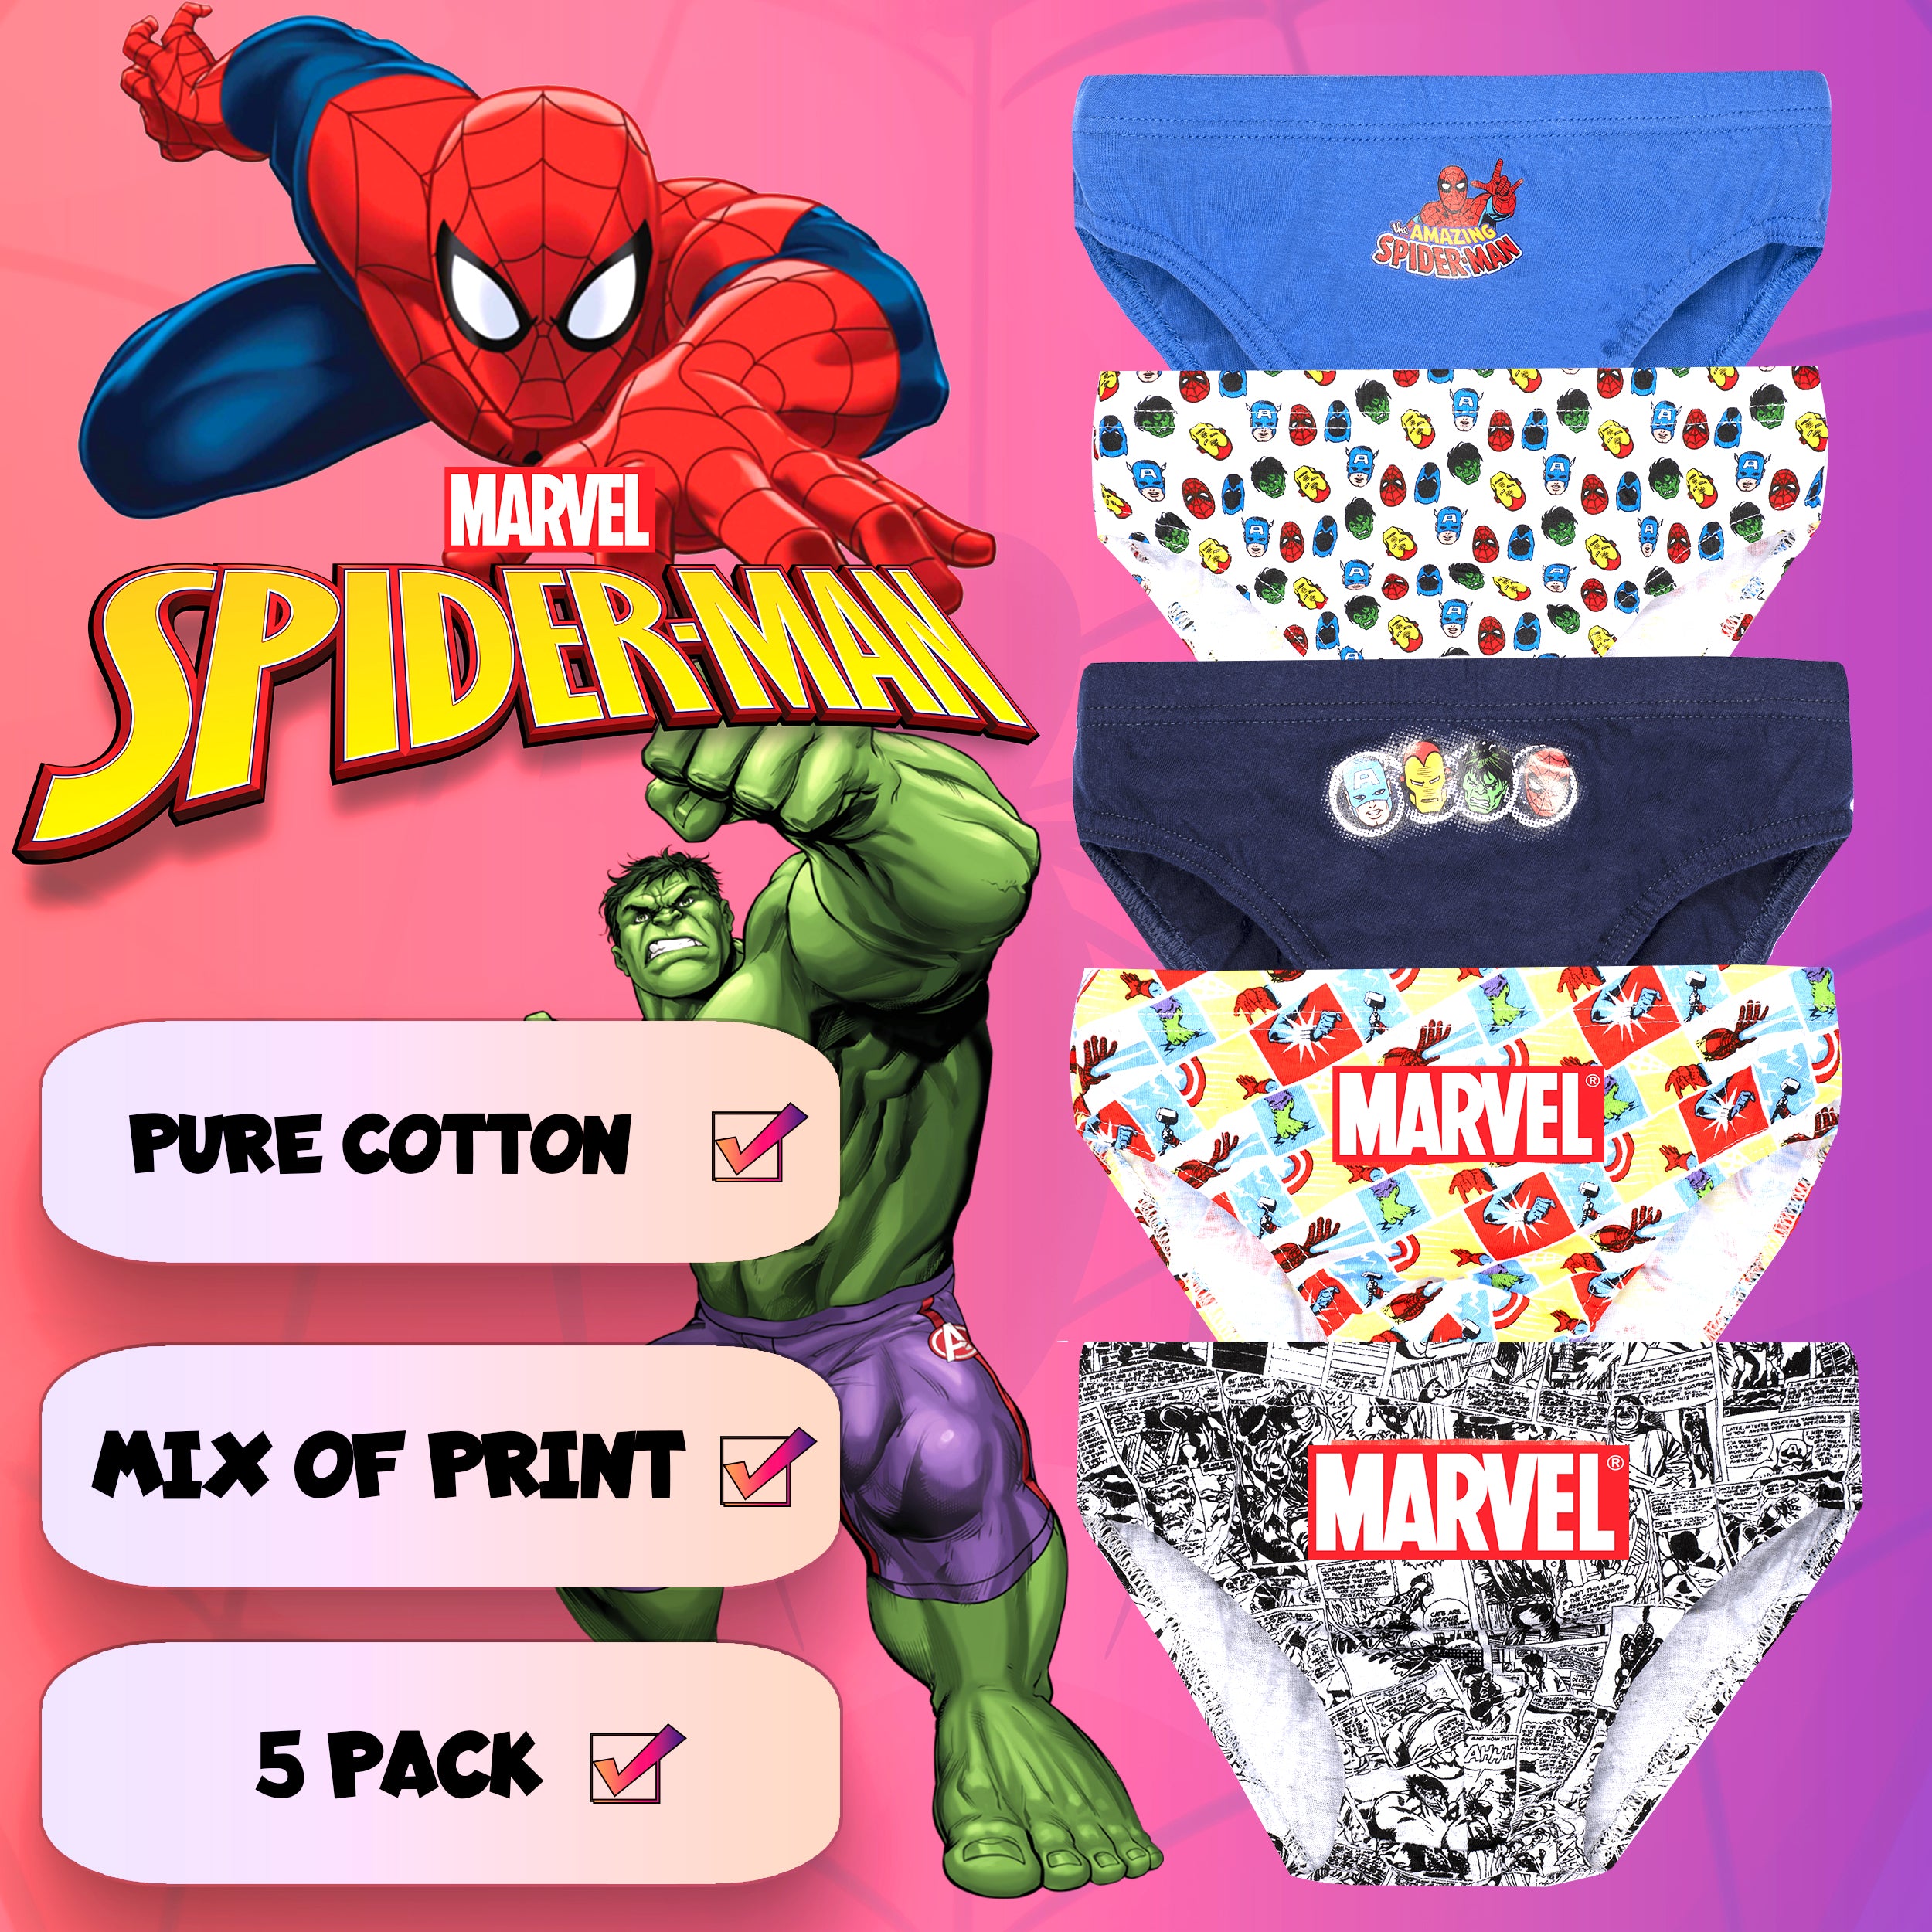 Spider-Man Brief Underwear, 3-Pack (Toddler Boys) 